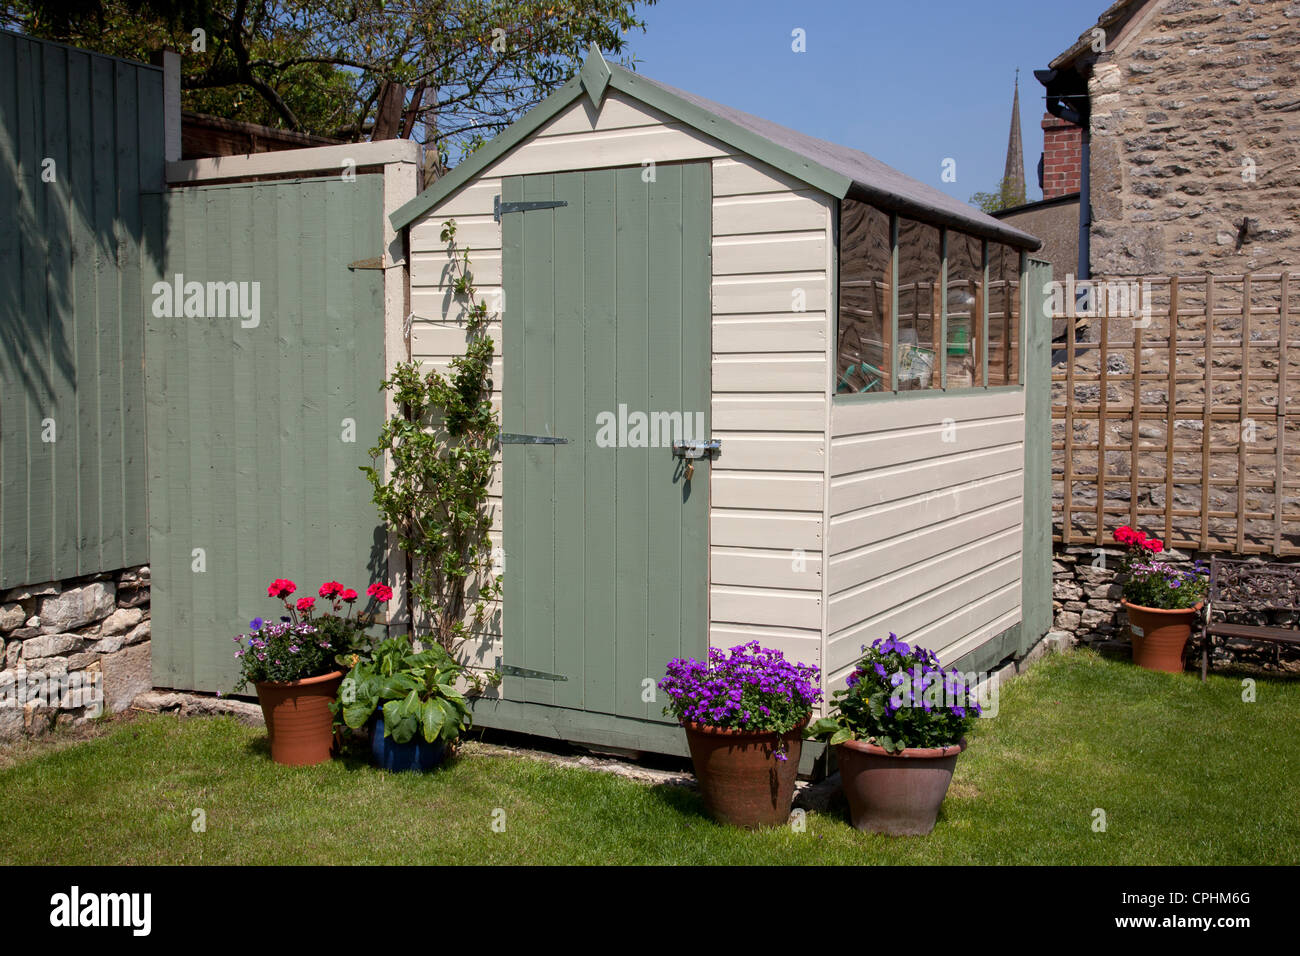 Gartenhaus in kleinen englischen Stadt Hausgarten mit Töpfe mit Blumen bemalt Stockfoto